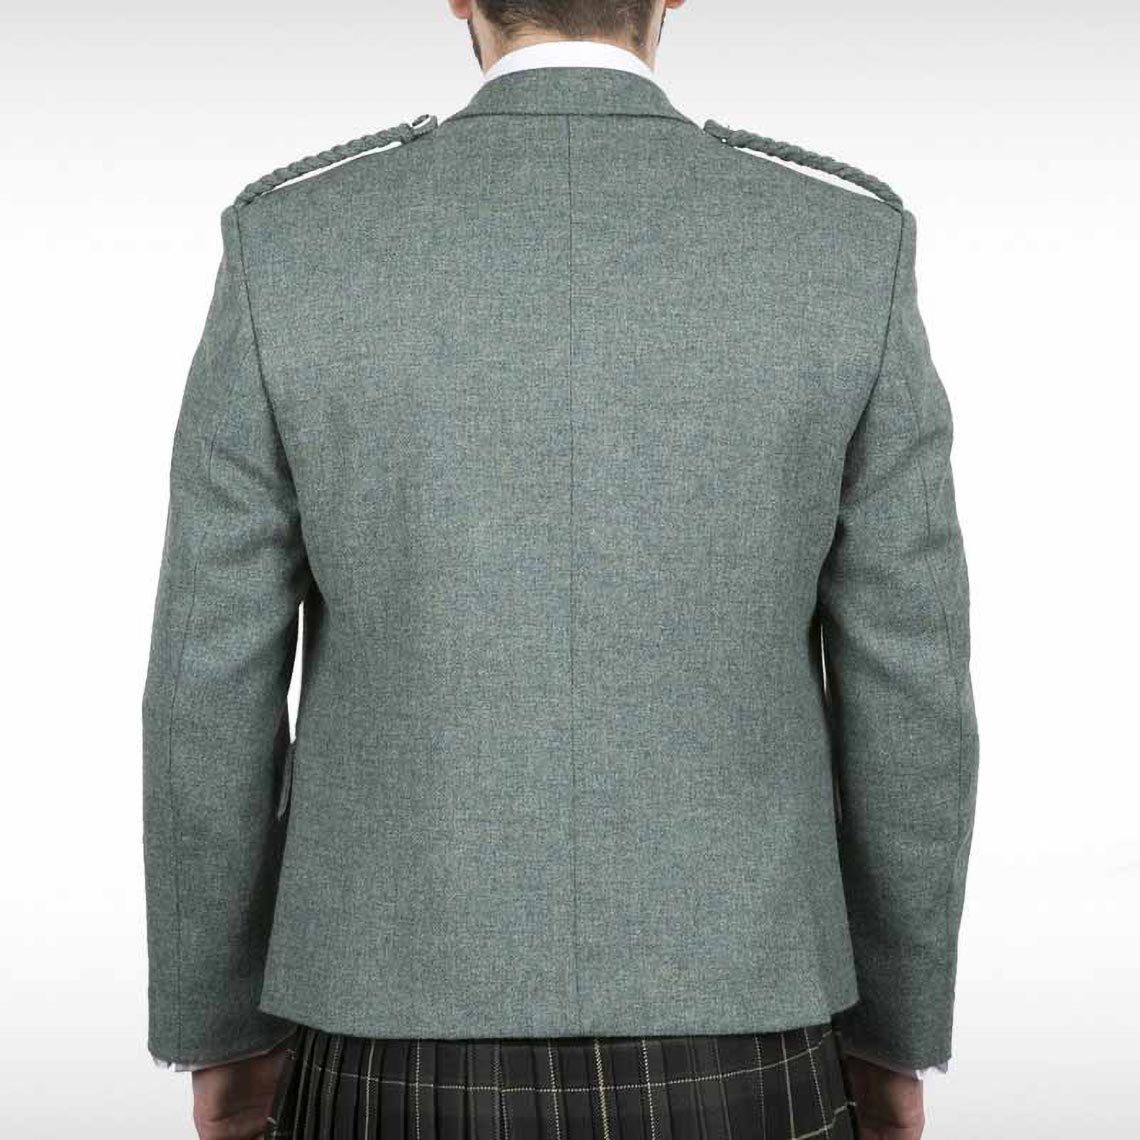 Lovat Green Crail Jacket & Waistcoat